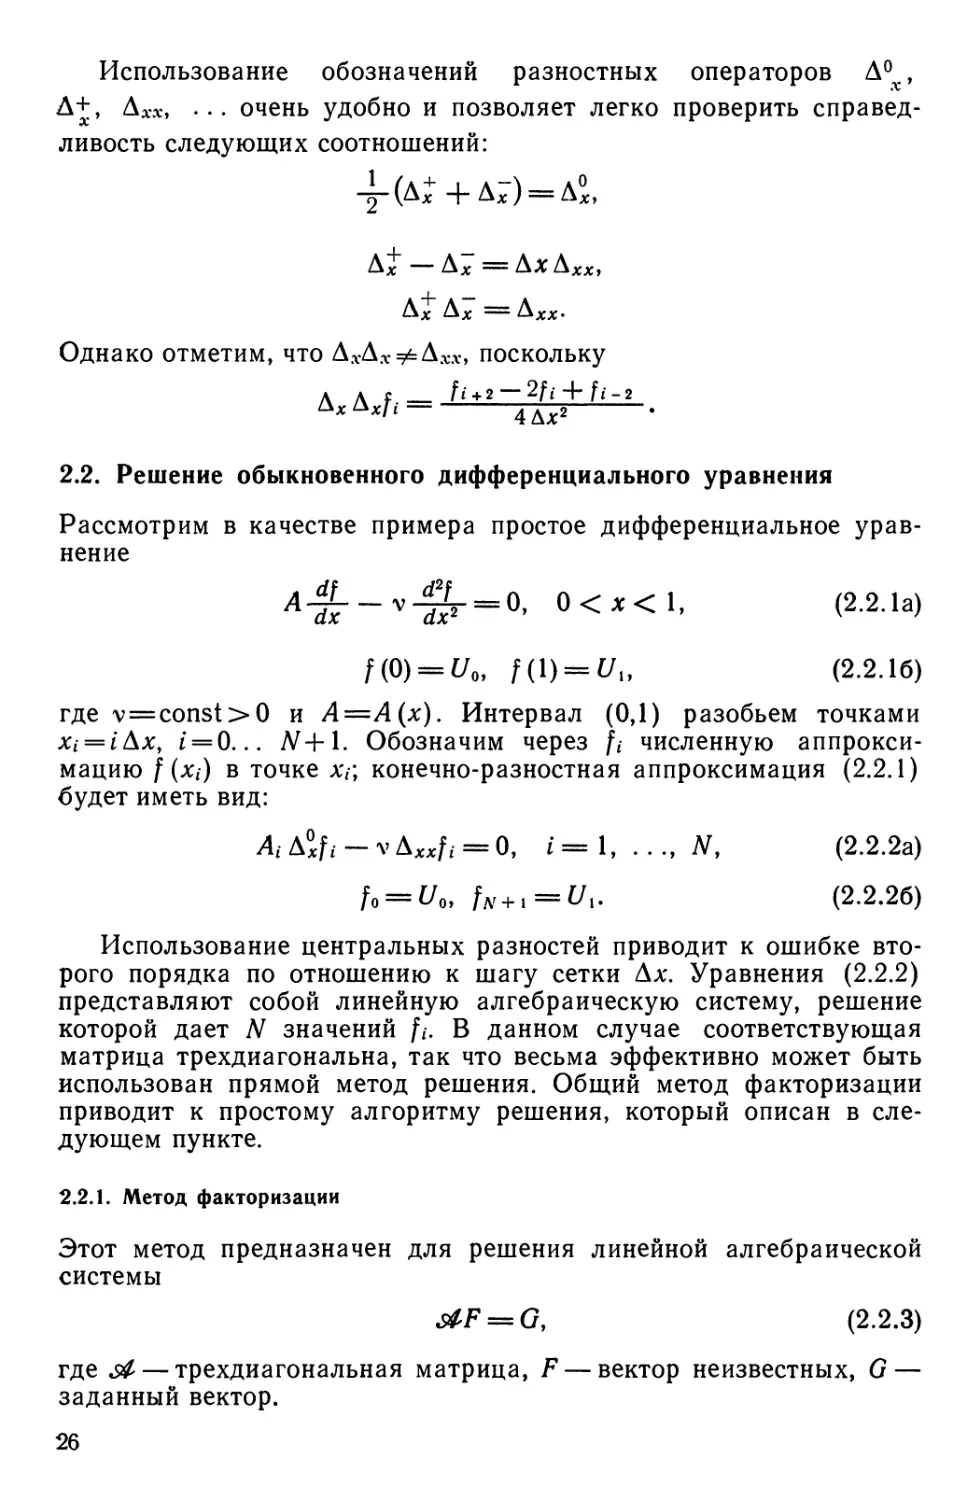 2.2. Решение обыкновенного дифференциального уравнения